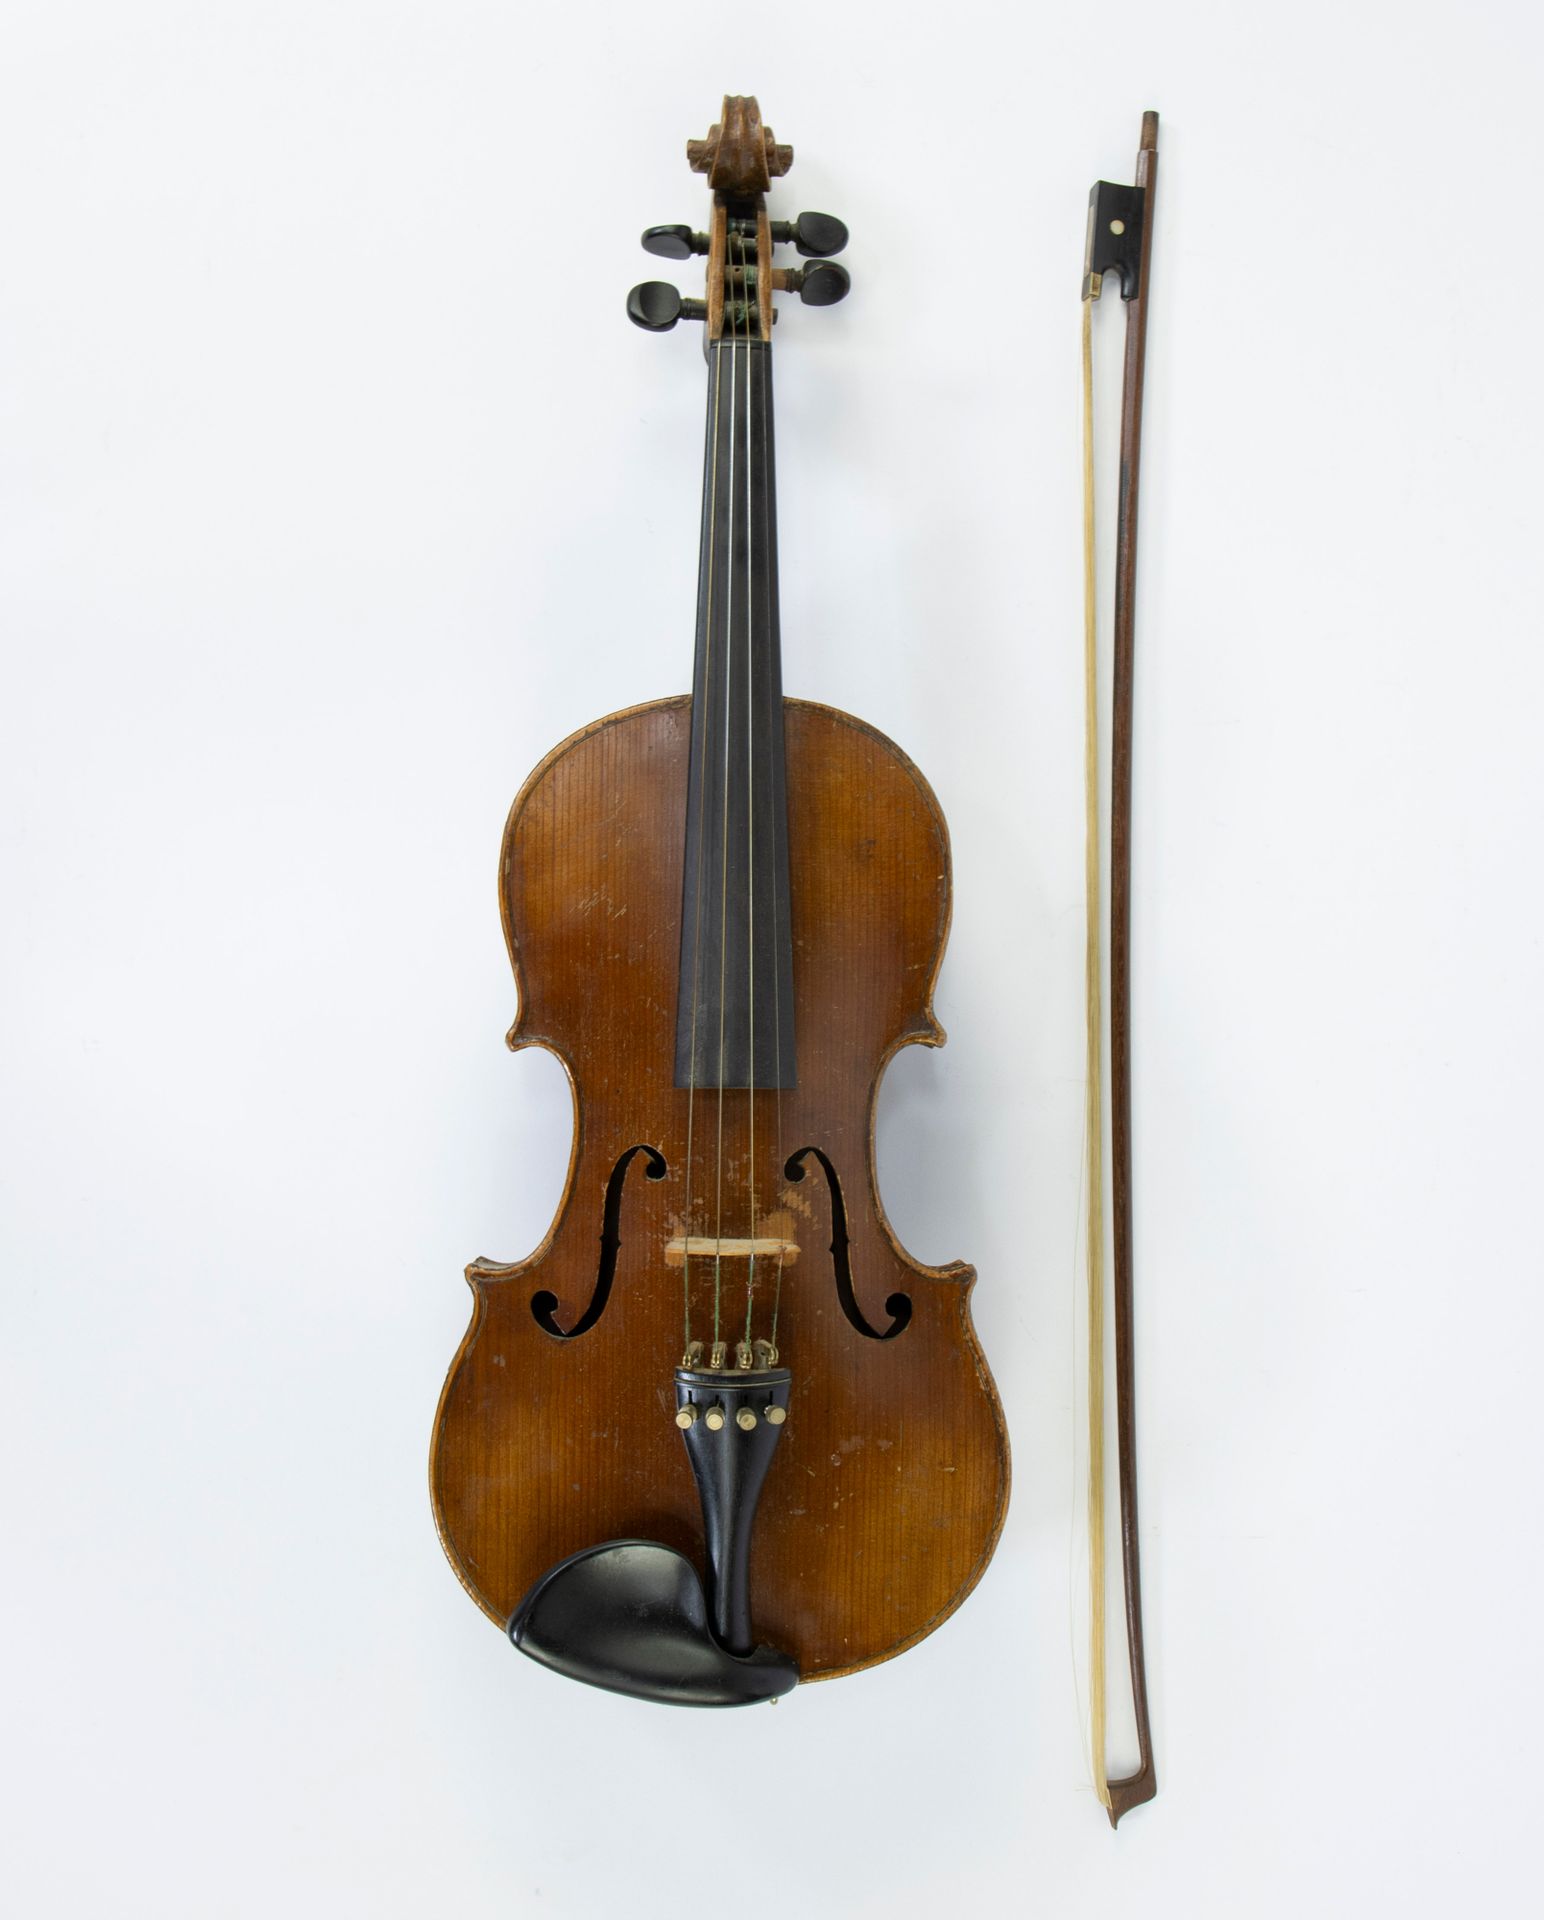 Null Violon allemand 4/4 avec archet
Duitse 4/4 viool met strijkstok
L 59 cm